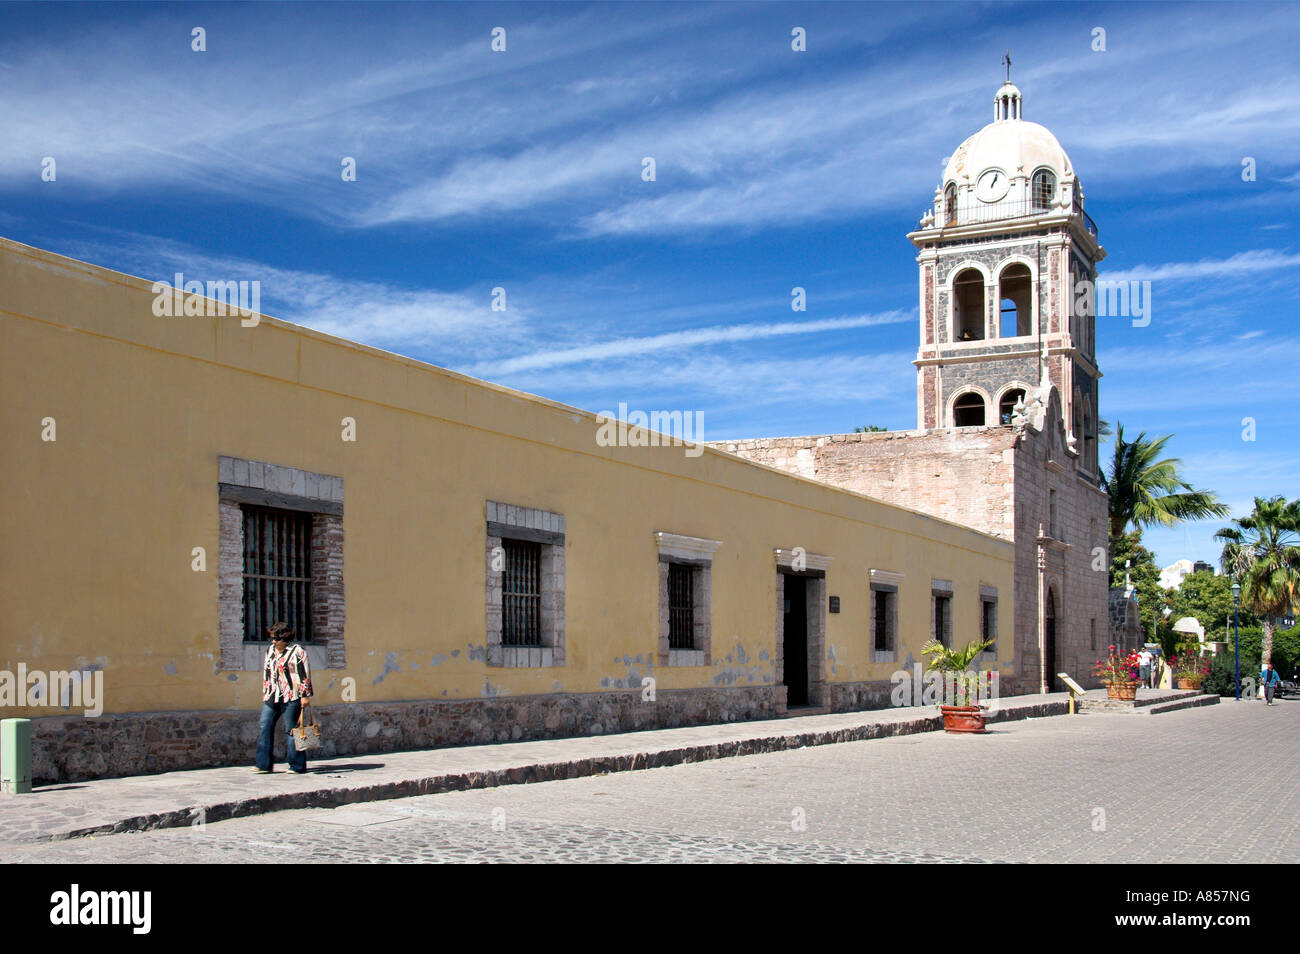 The Mission of Nuestra Senora de Loreto Conchis the Cathedral at Loreto Mexico Stock Photo